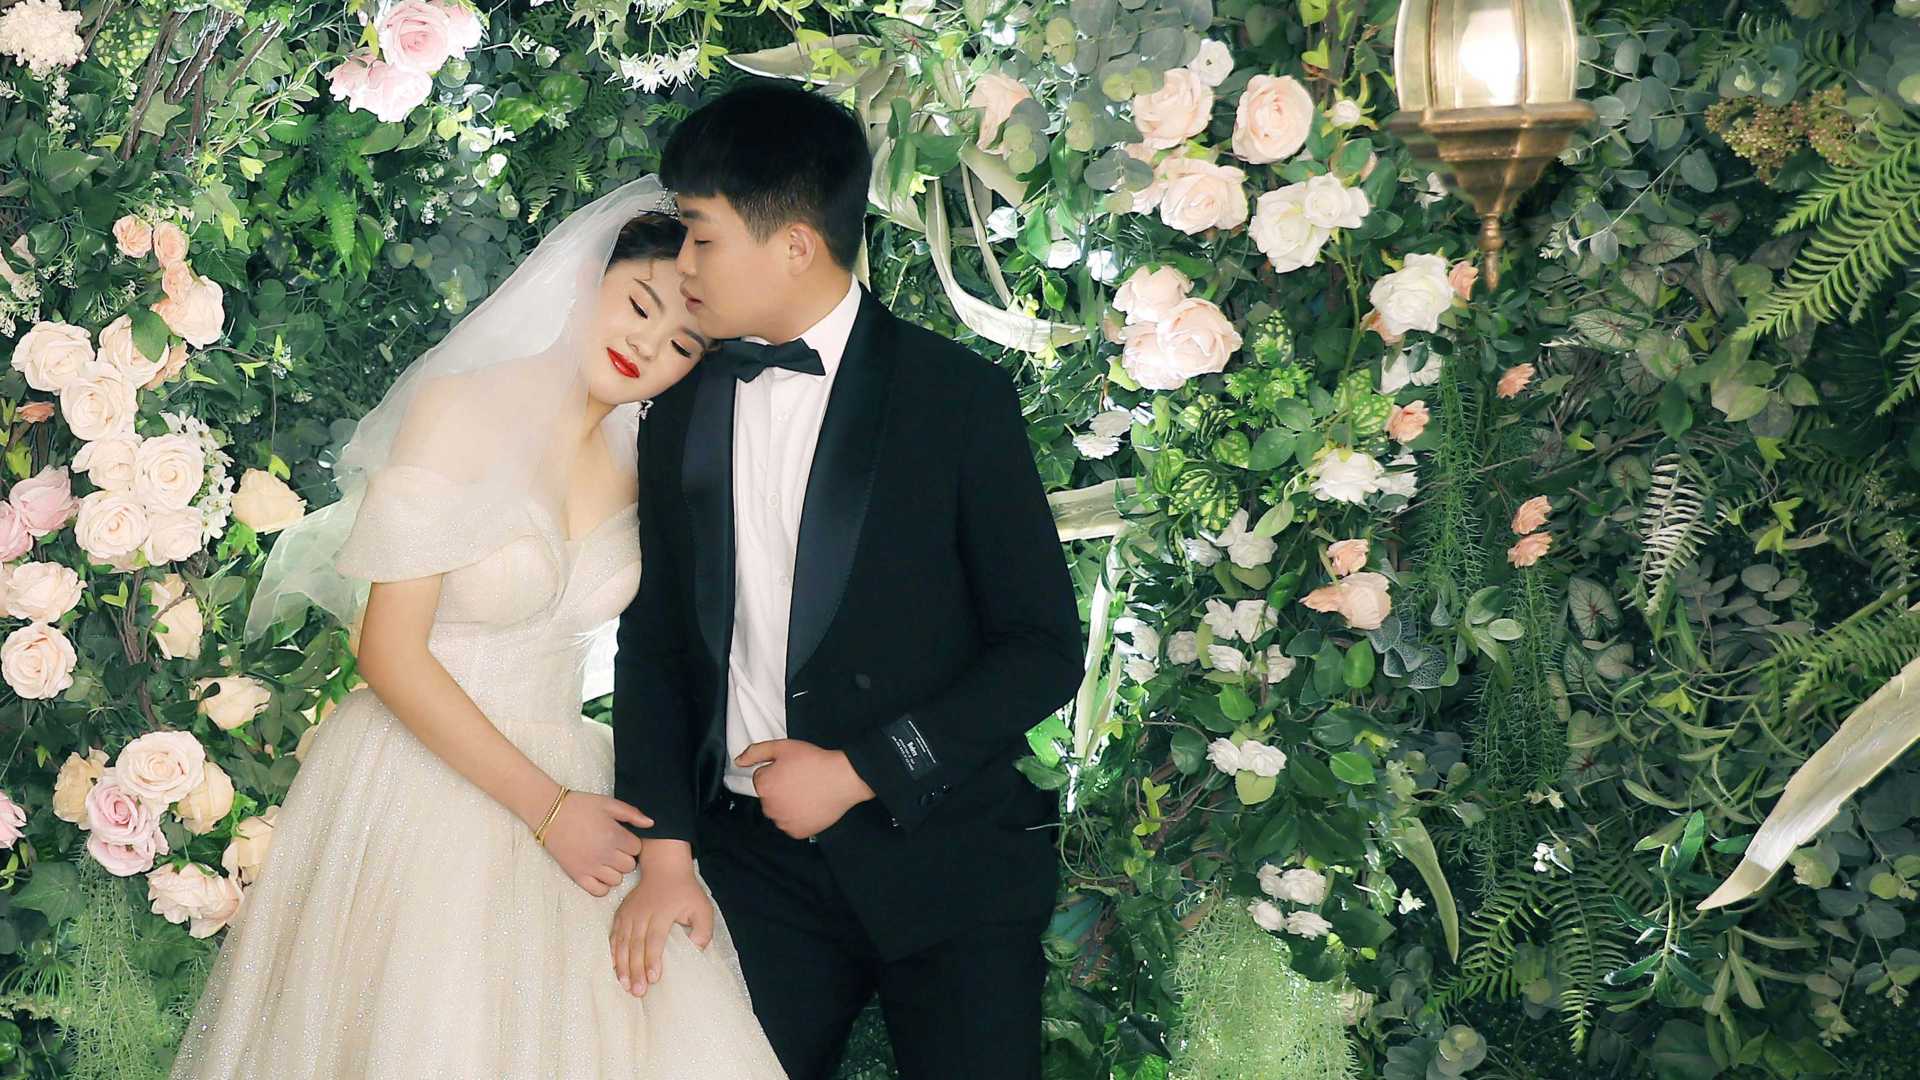 苏浩&李圆圆 婚礼视频